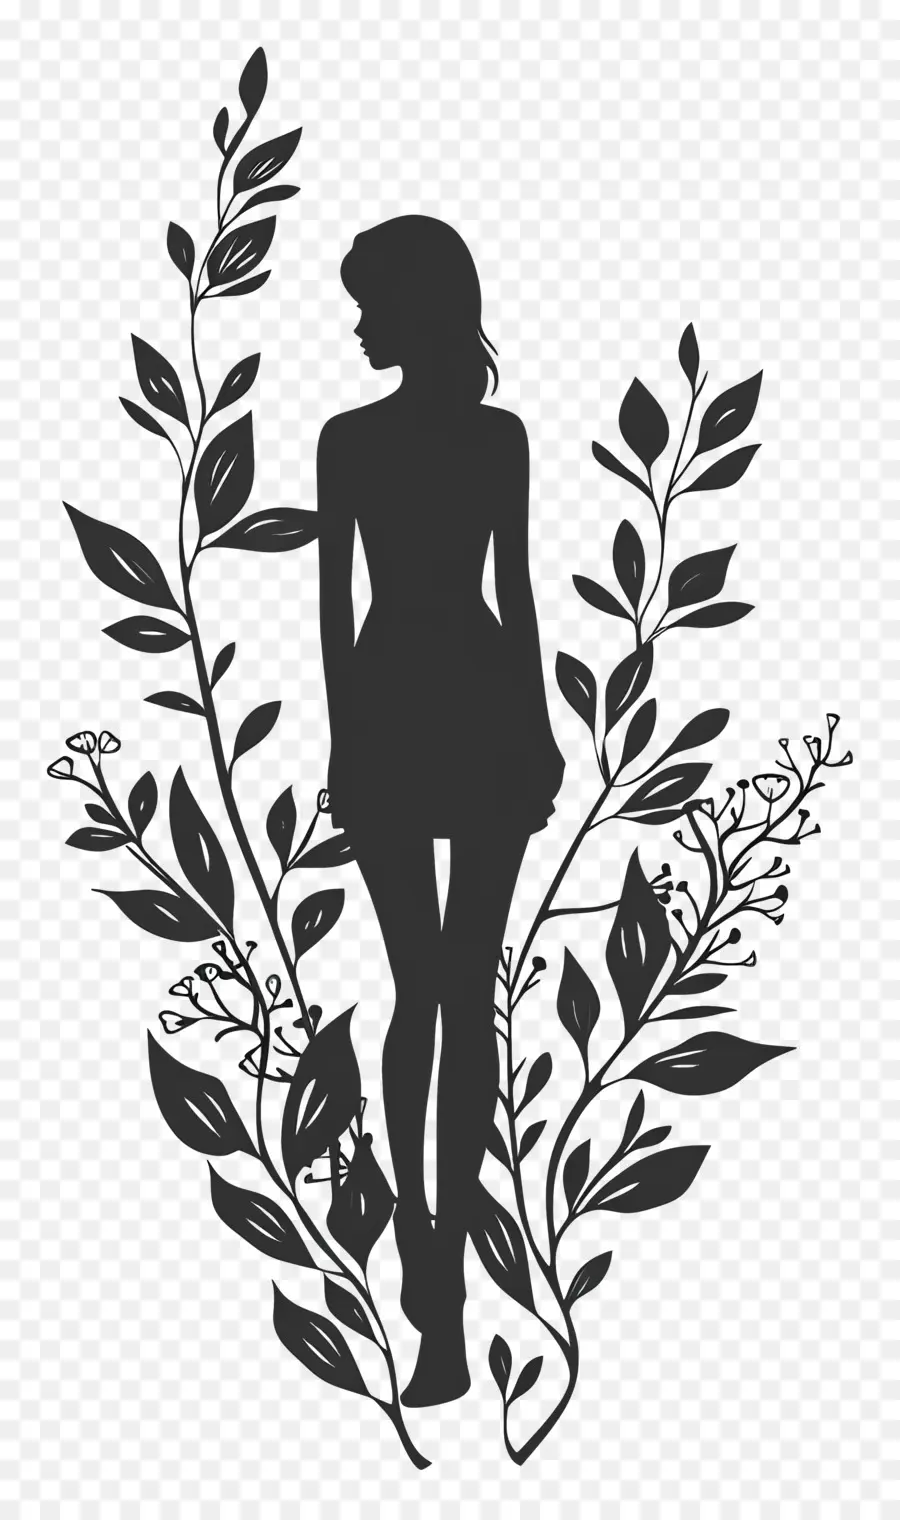 ragazza silhouette donna silhouette piante fiori bianchi e neri - Silhouette di donna circondata da piante